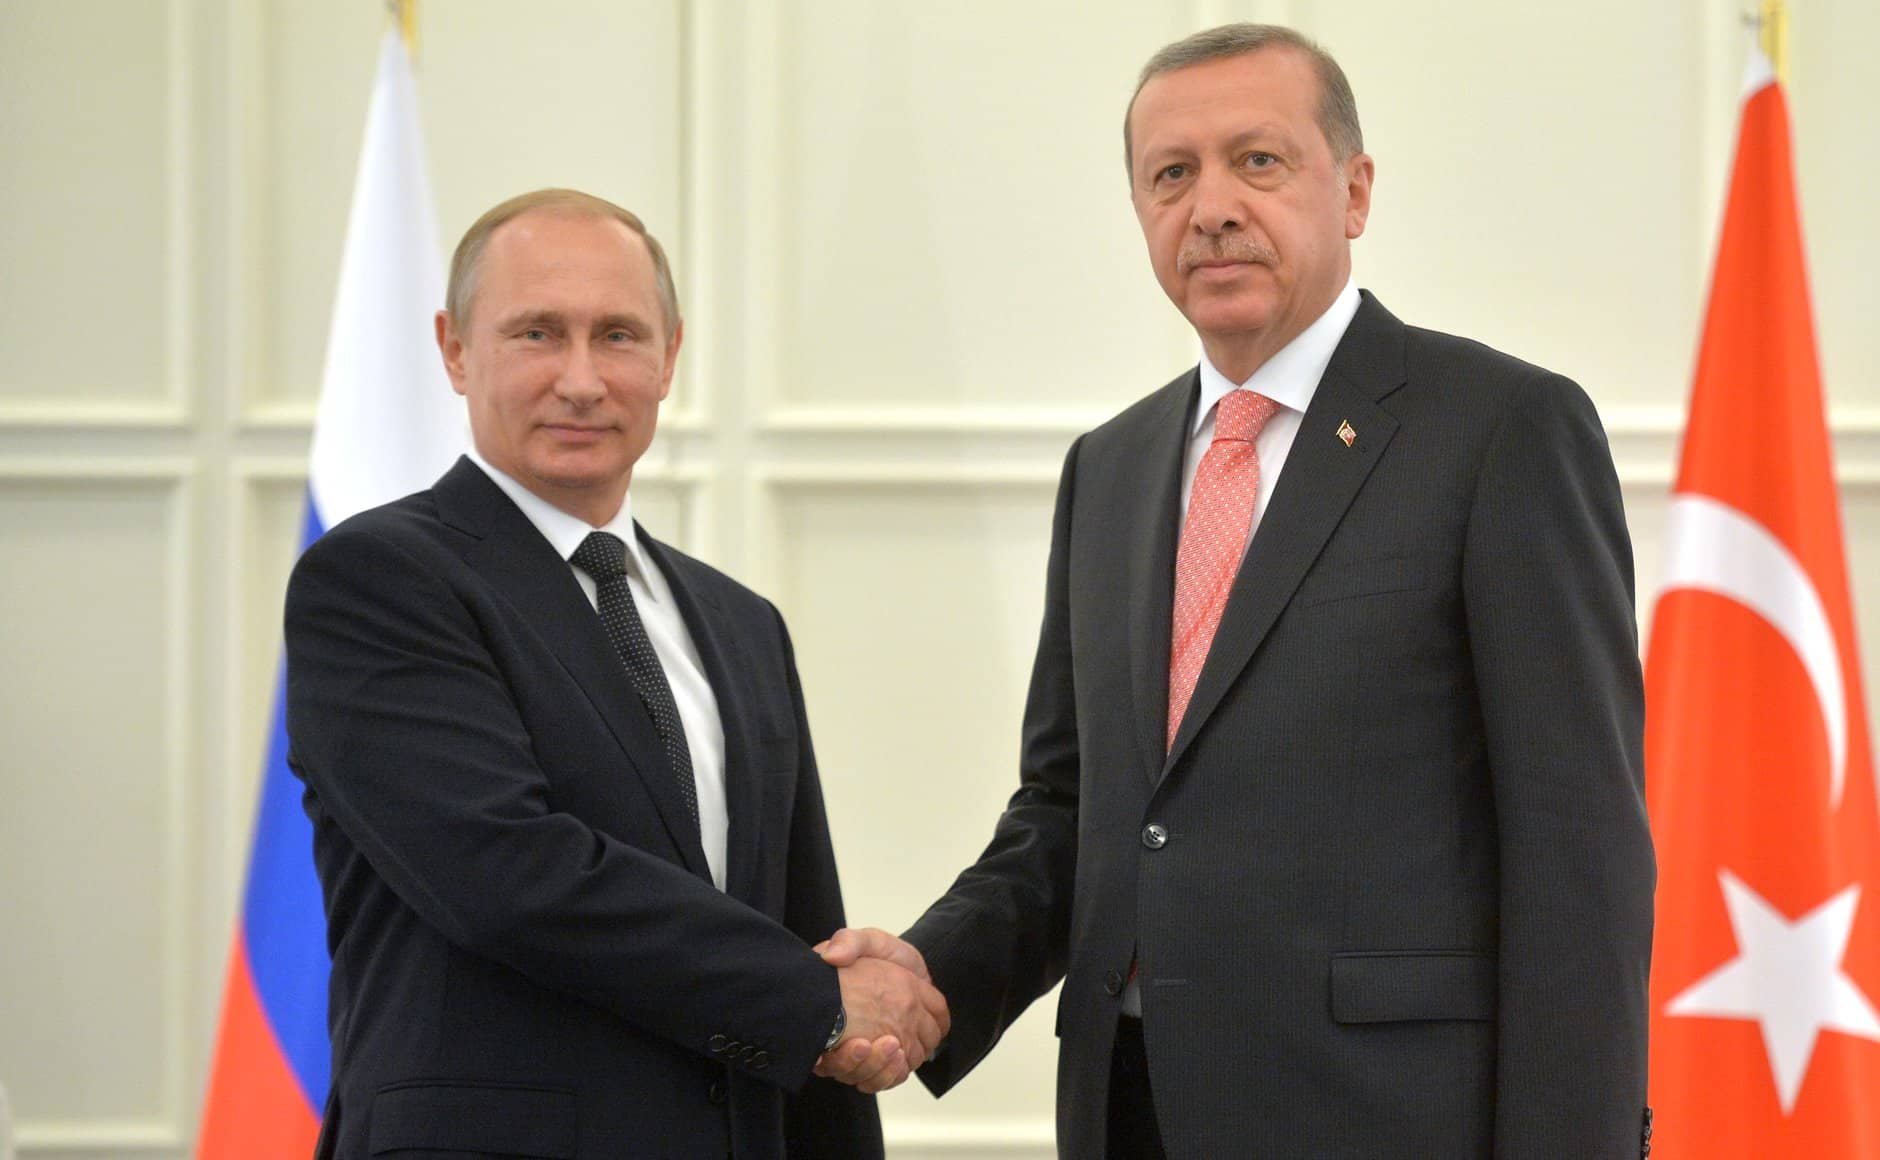 Vladimir_Putin_and_Recep_Tayyip_Erdoğan_(2015-06-13)_5